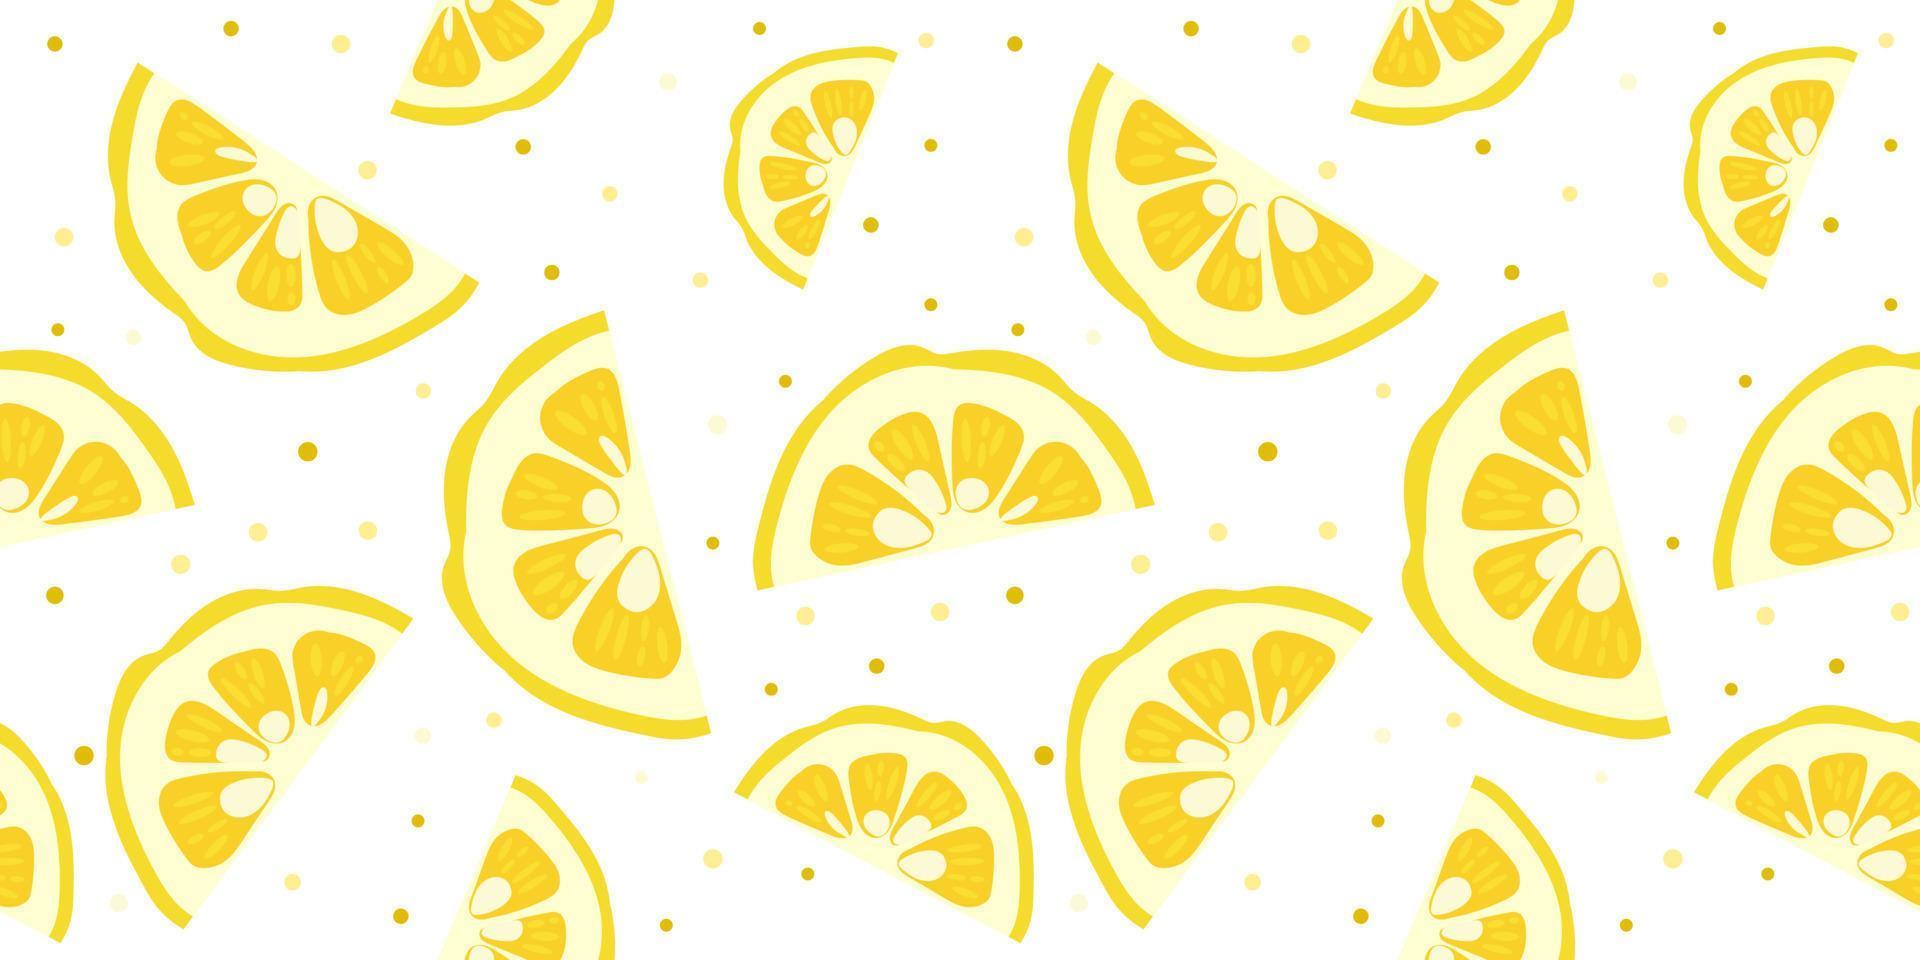 Yuzu japanese citron fruit seamless pattern vector illustration isolated on white background.